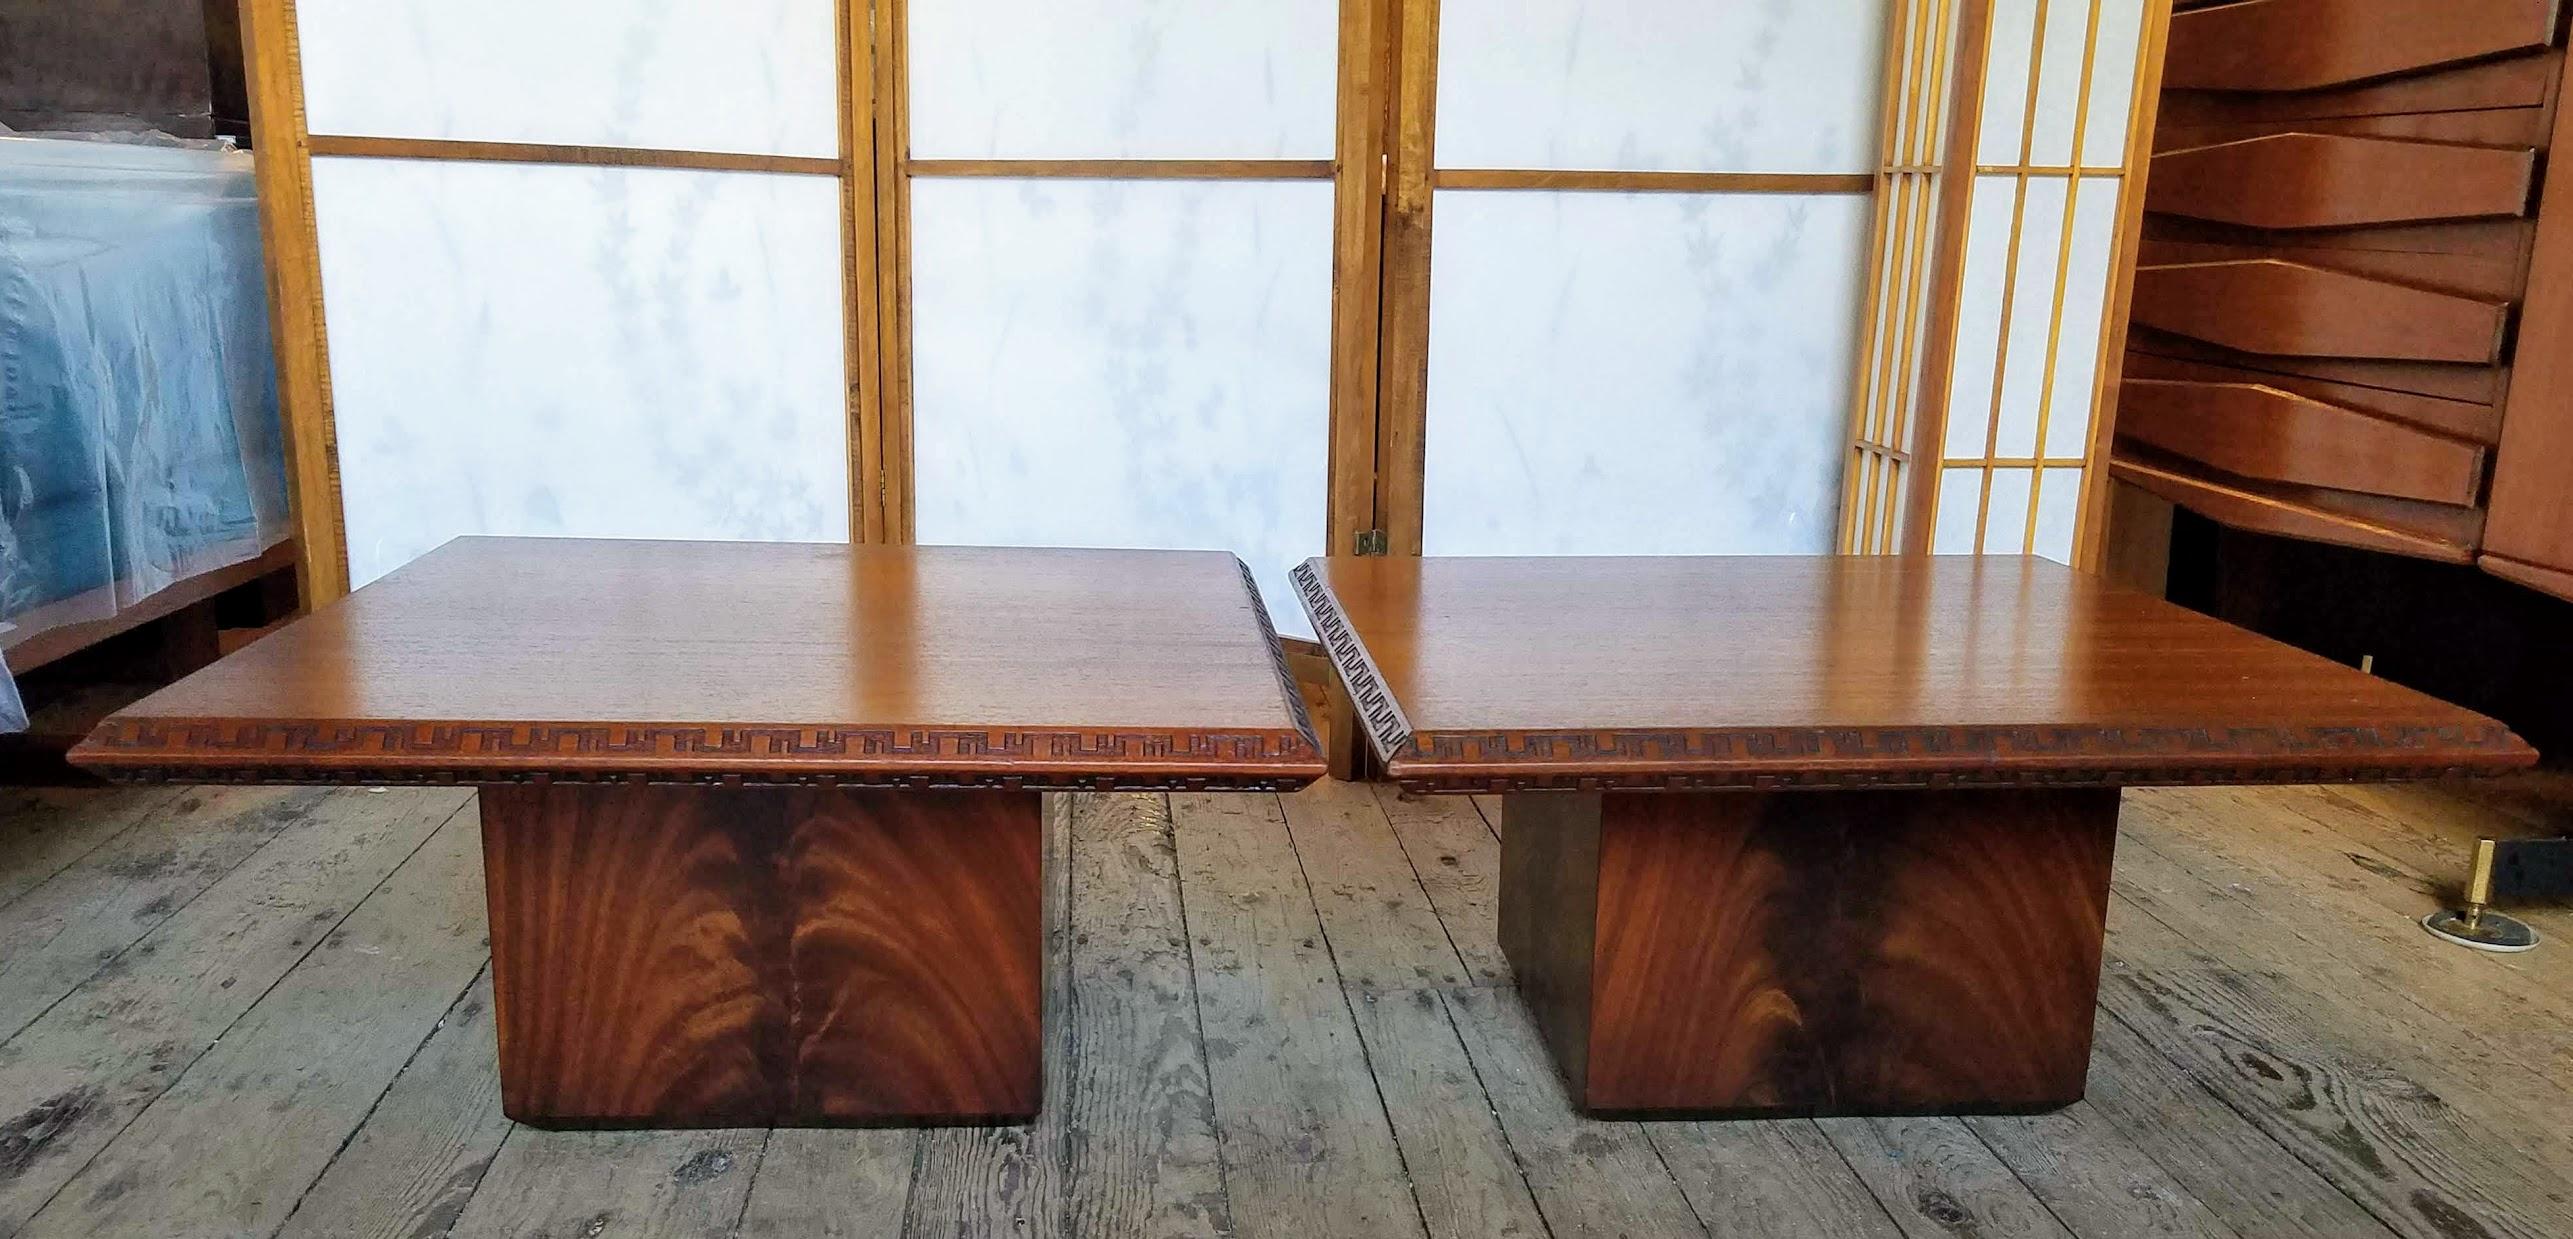 Zwei Mahagoni-Couchtische oder kleine Couchtische von Frank Lloyd Wright, die für Heritage Henredon für ihre 1955 eingeführte Taliesin-Linie entworfen wurden.
Beide Tische sind mit ihren Modellnummern signiert und datiert.
Die Tische sind in